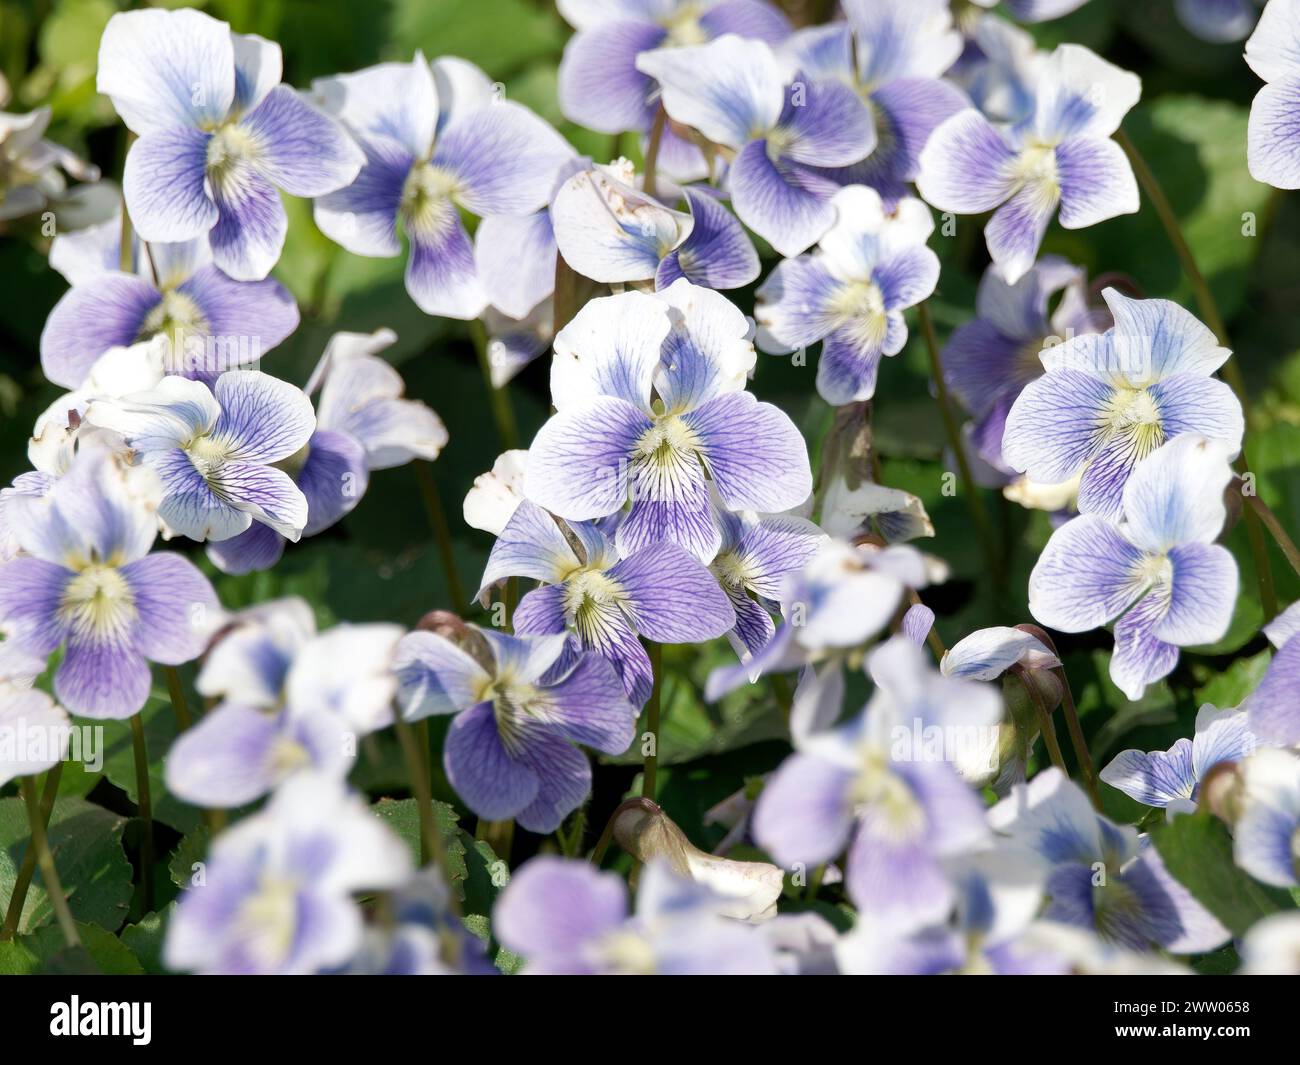 common blue violet, common meadow violet, purple violet, woolly blue violet, hooded violet, Violette de la Pentecôte, Viola sororia, amerikai ibolya Stock Photo